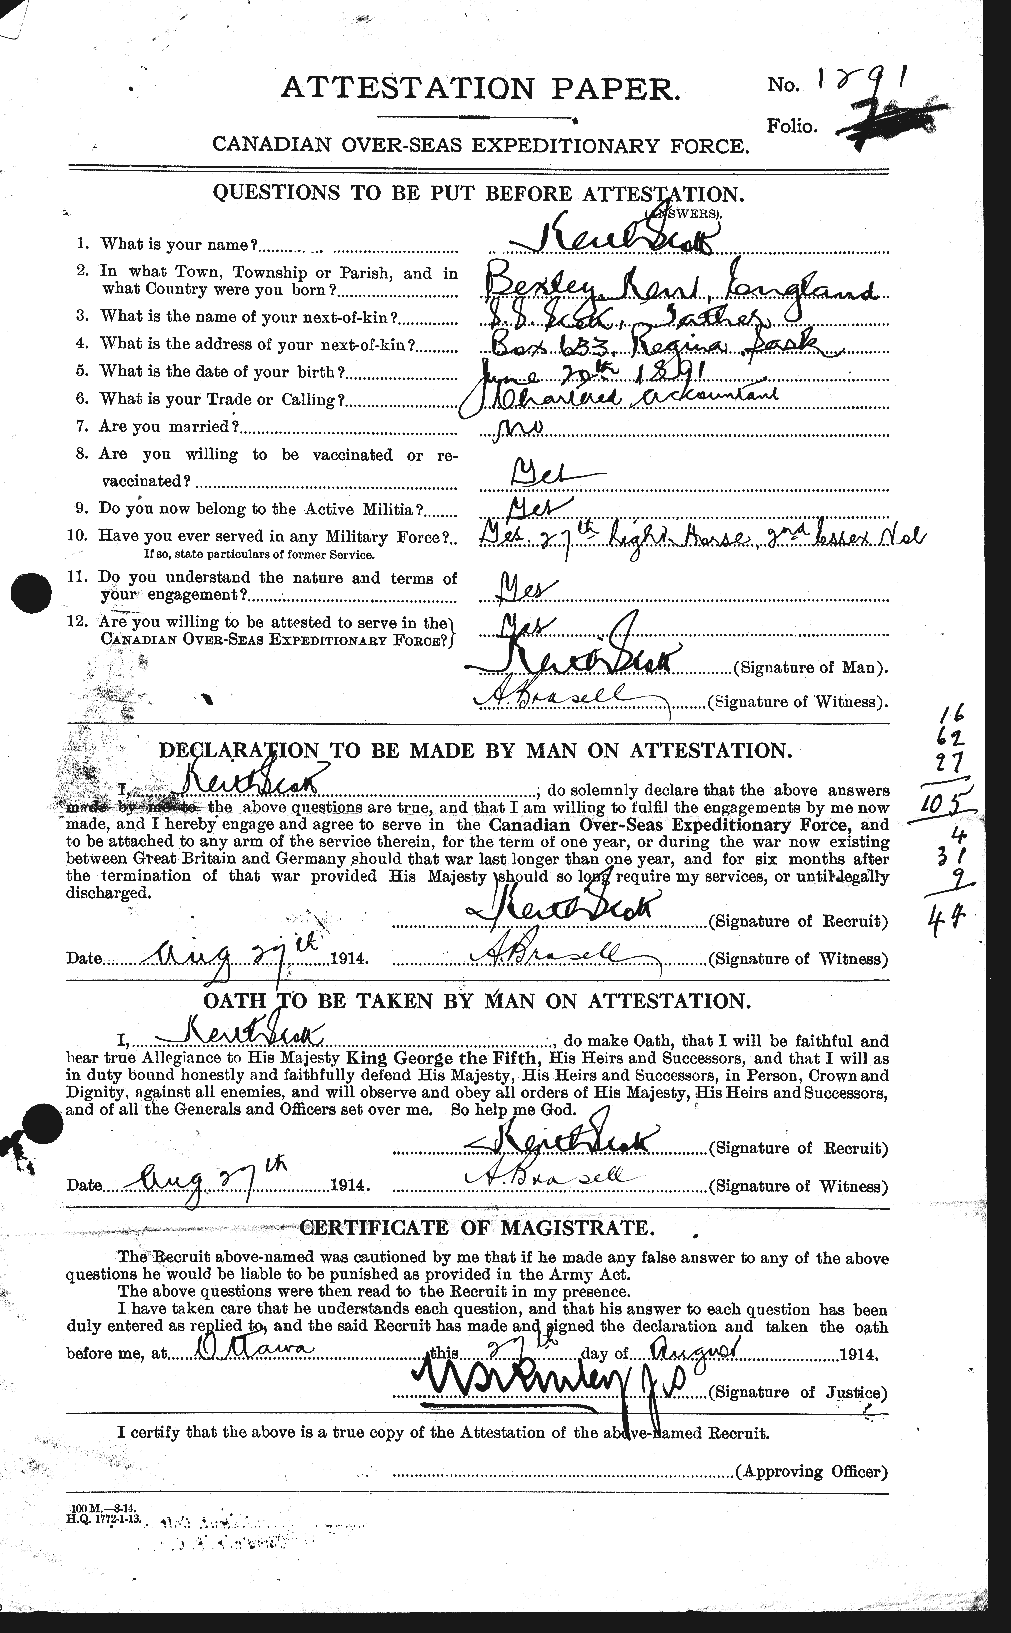 Dossiers du Personnel de la Première Guerre mondiale - CEC 084156a